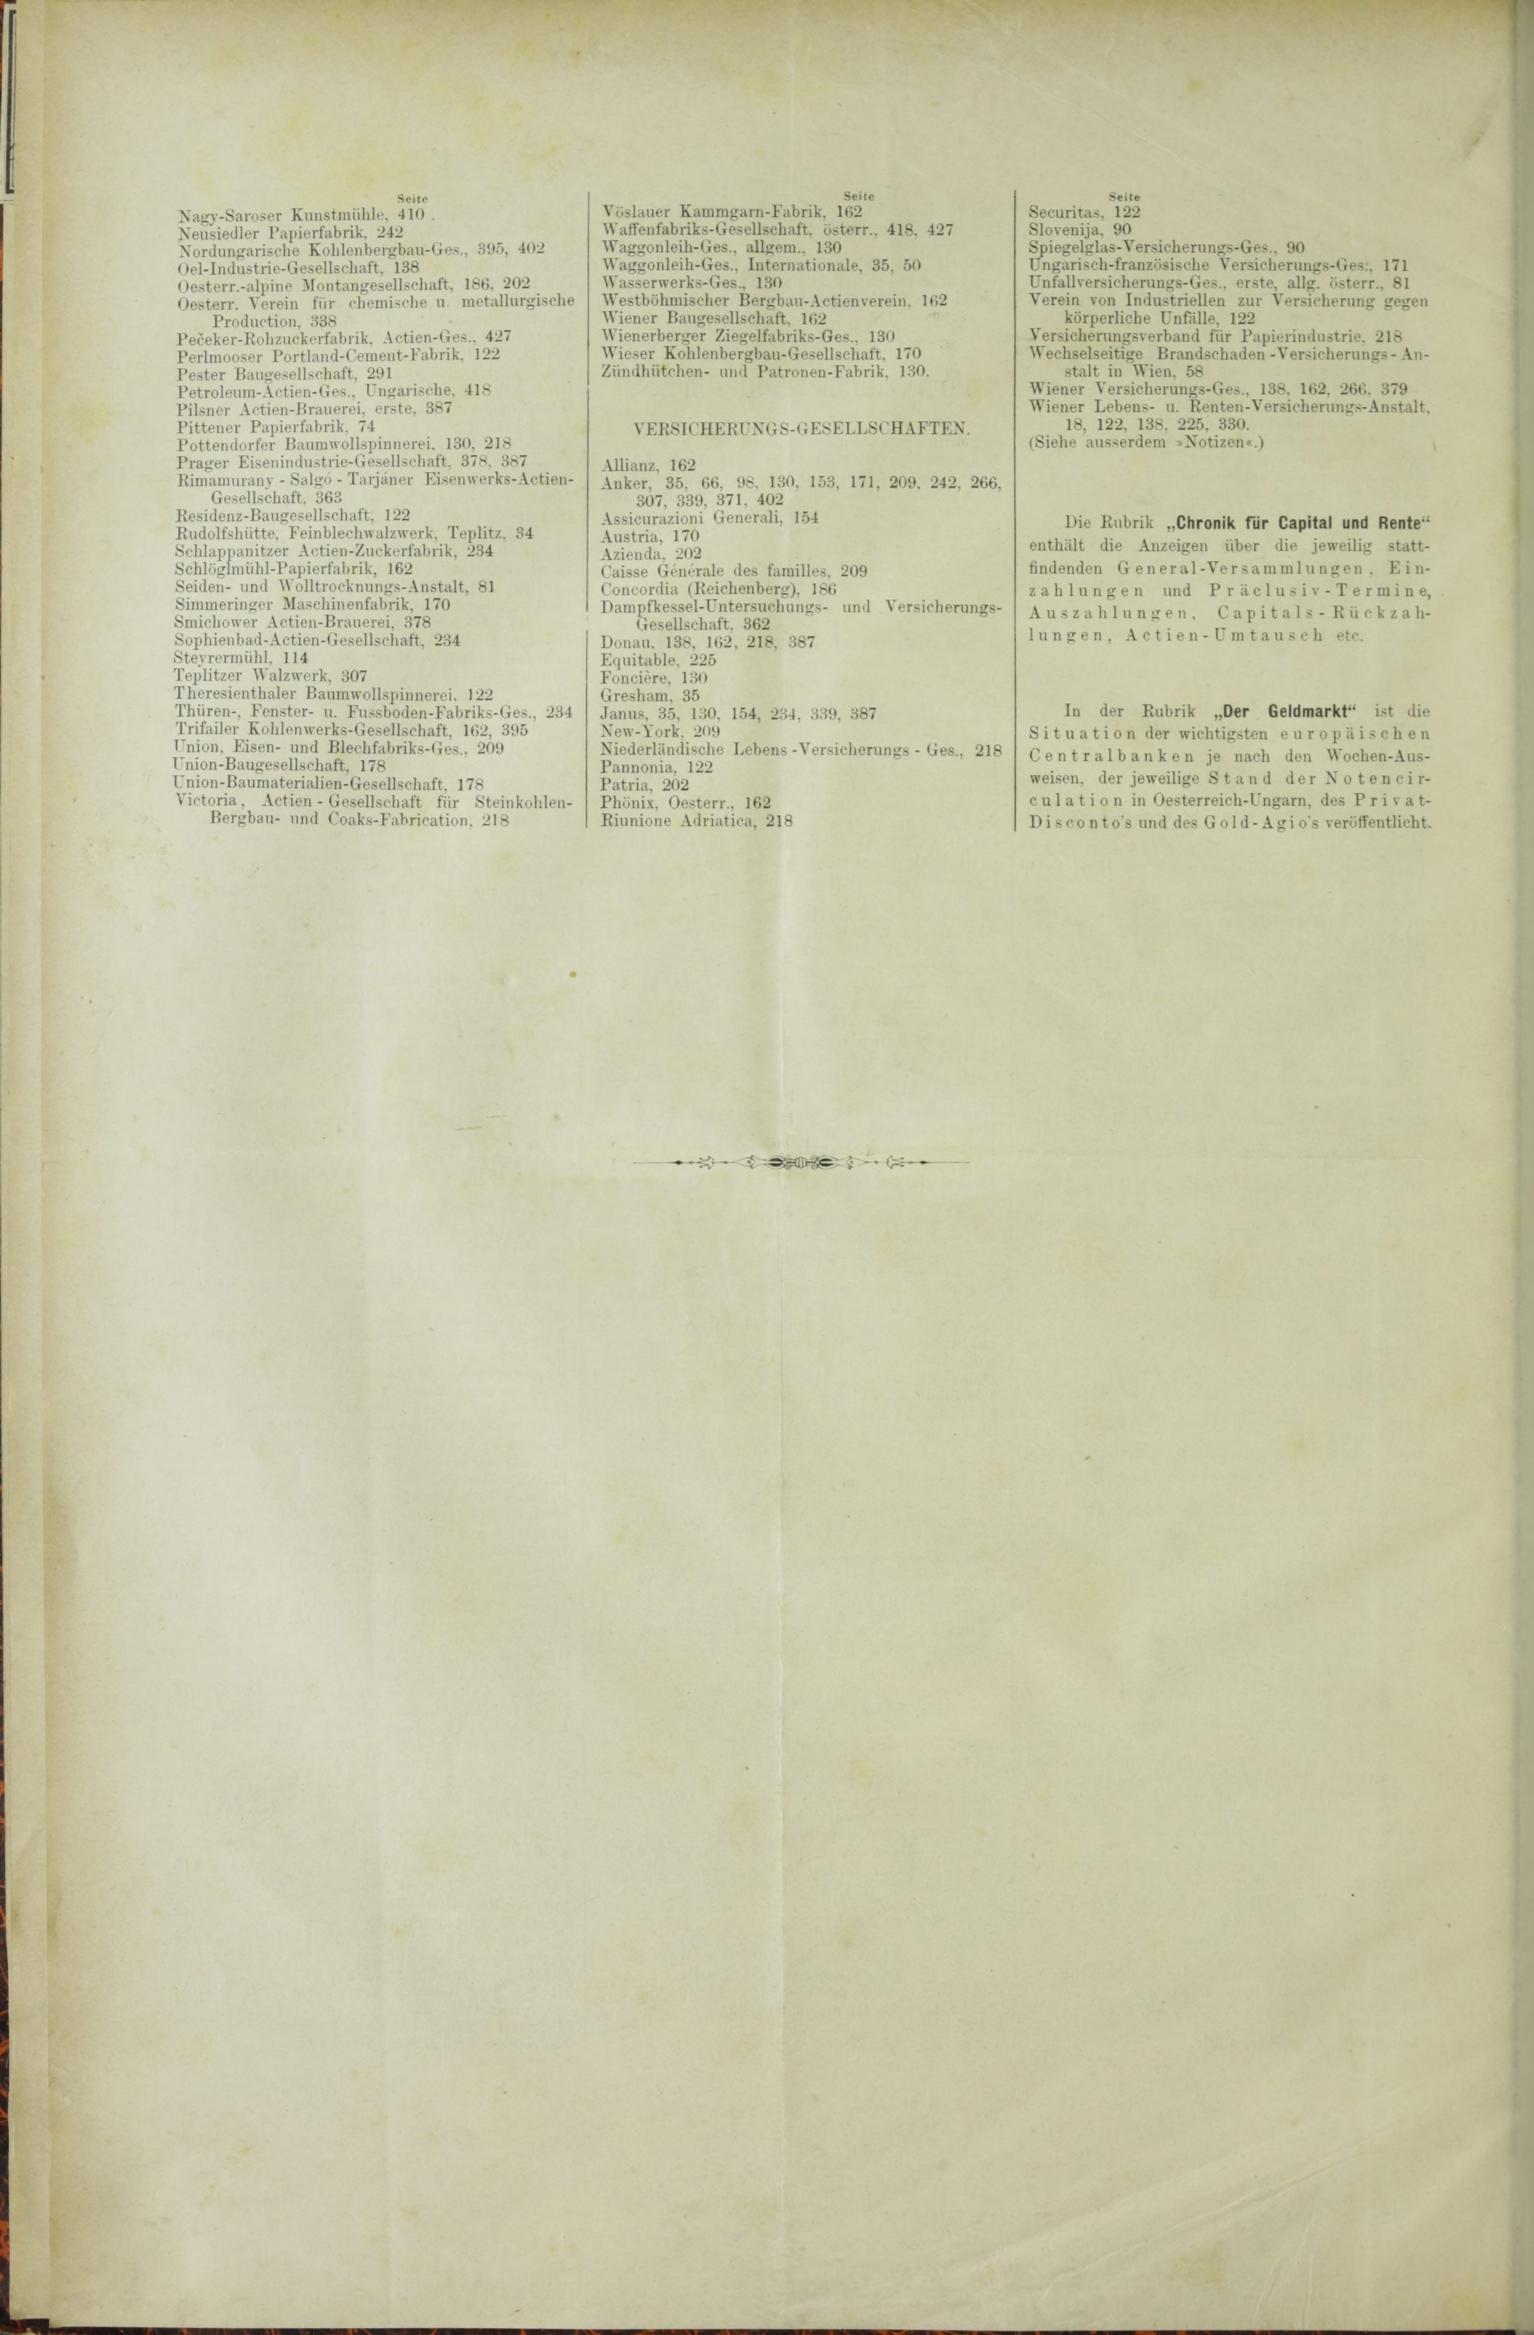 Der Tresor 22.01.1885 - Seite 12